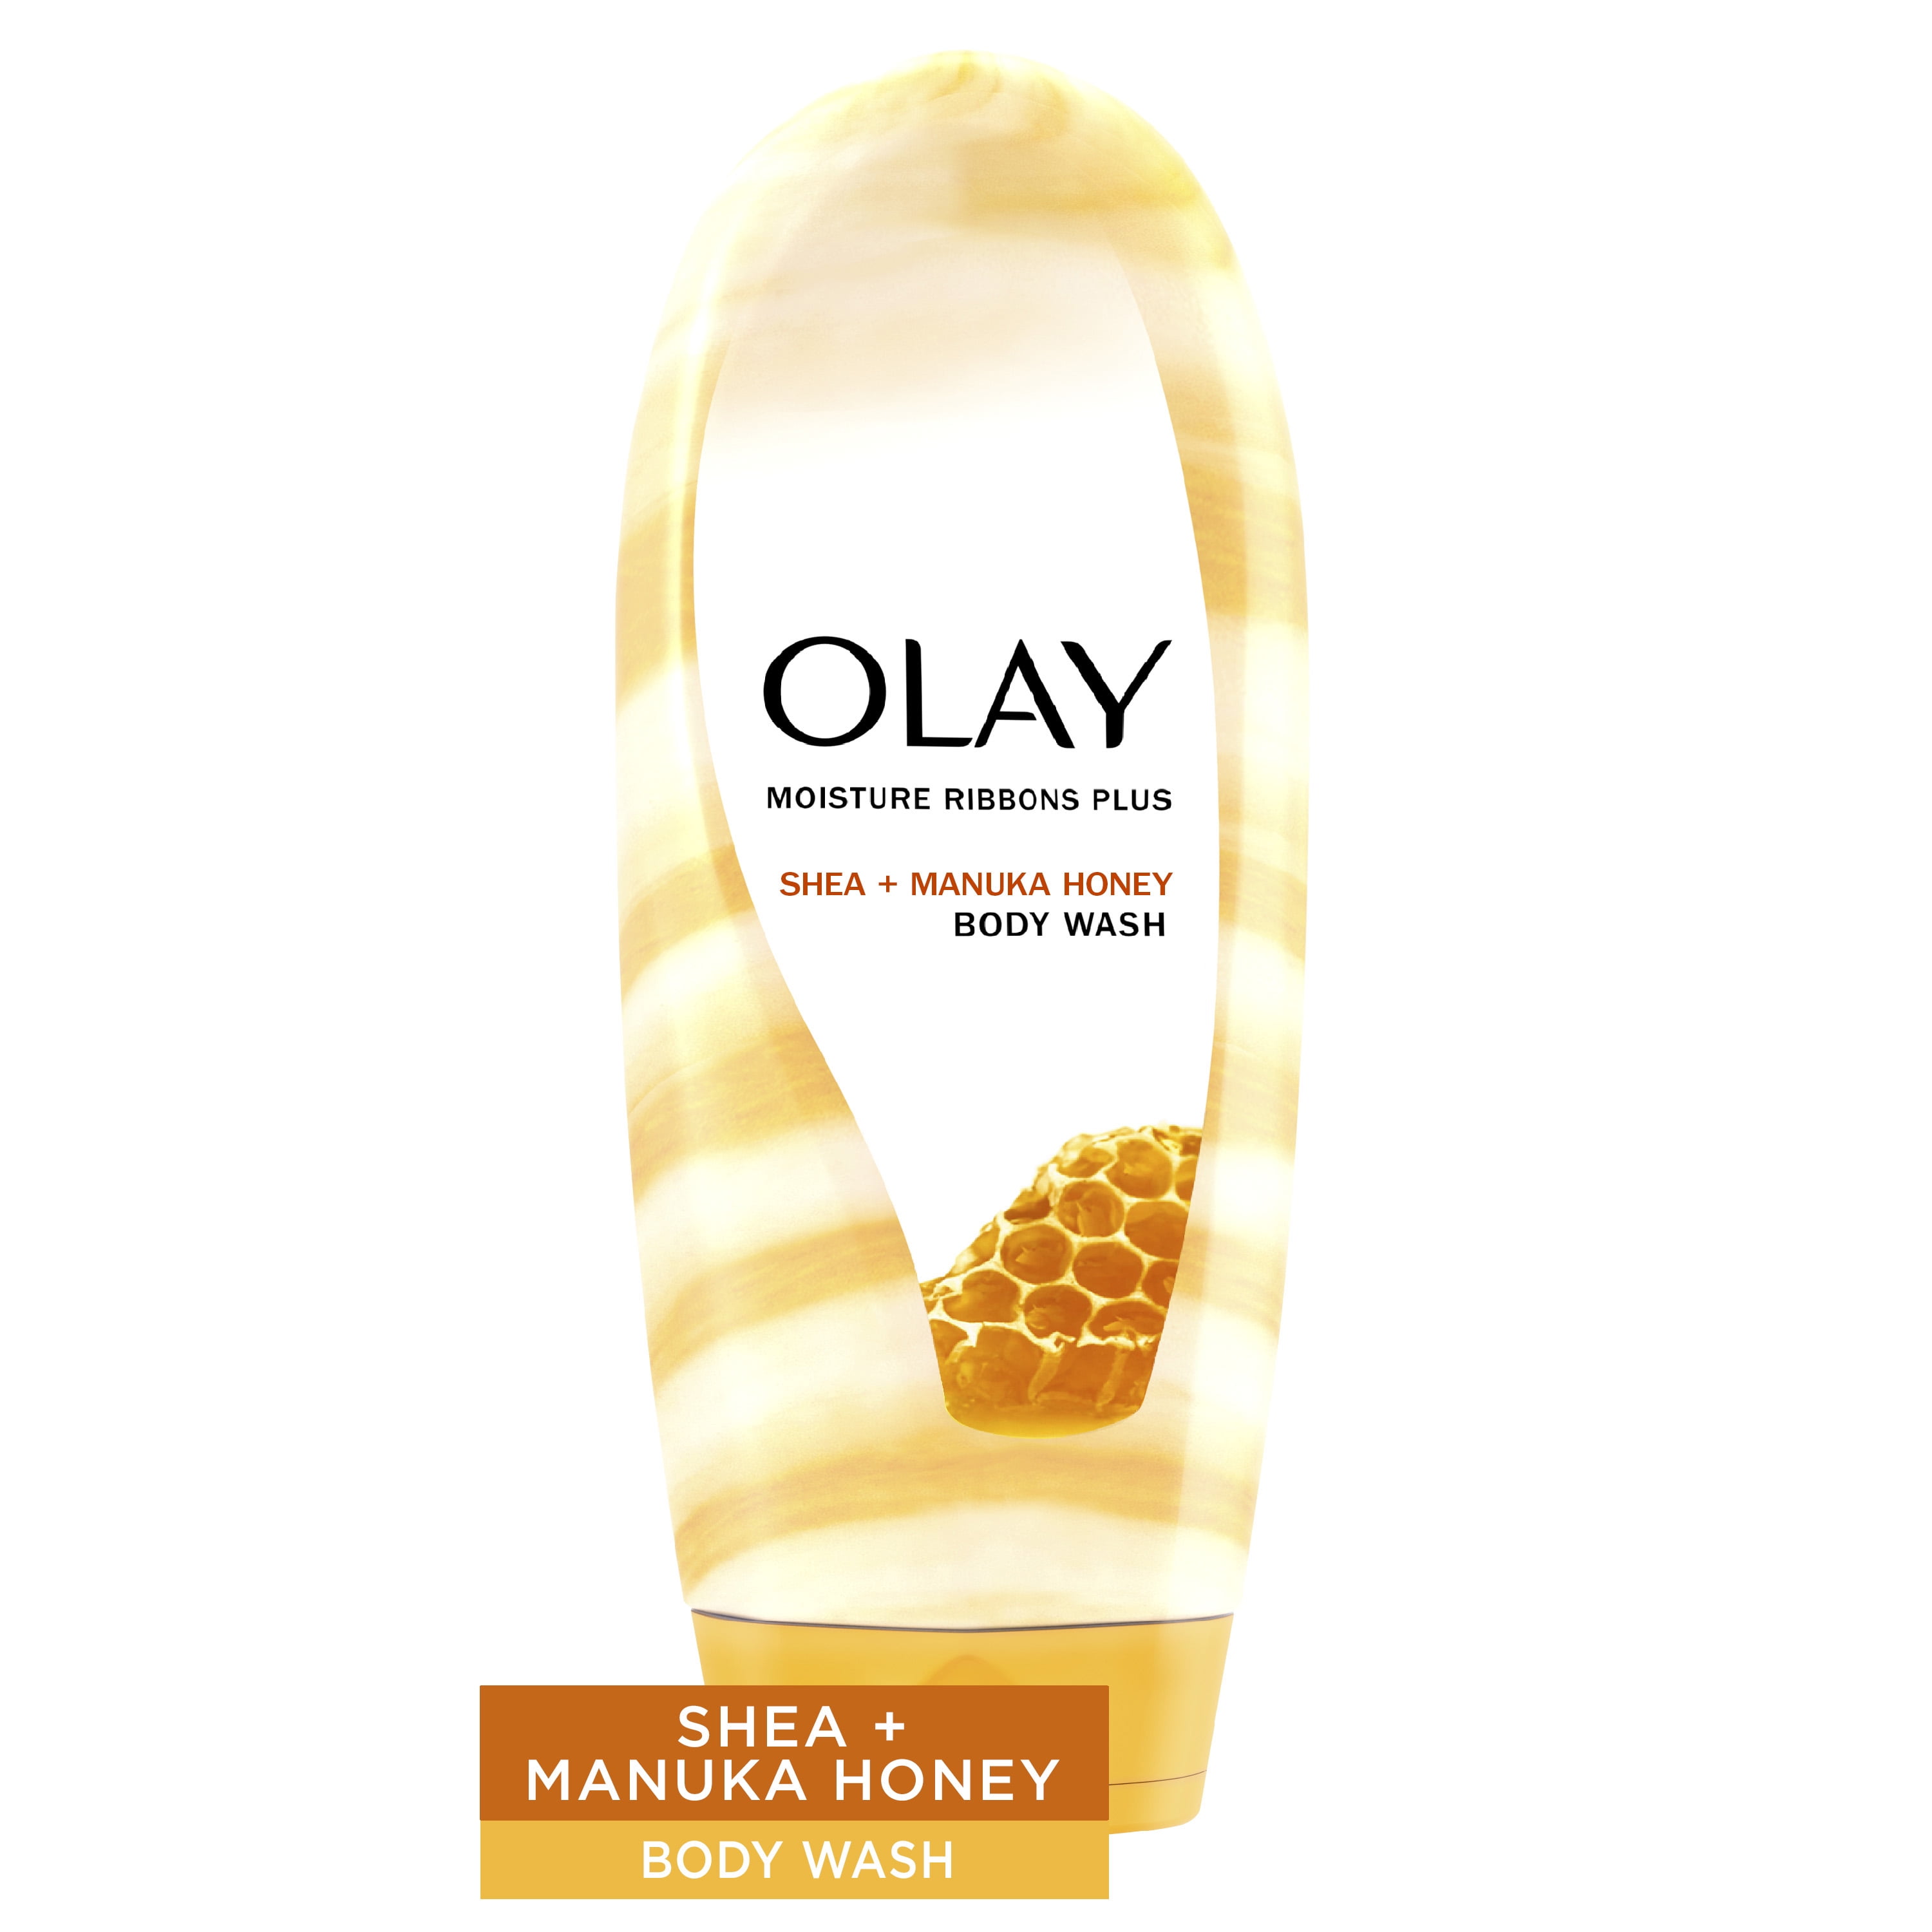 Olay Moisture Ribbons Plus Shea and Manuka Honey Body Wash, 18 oz